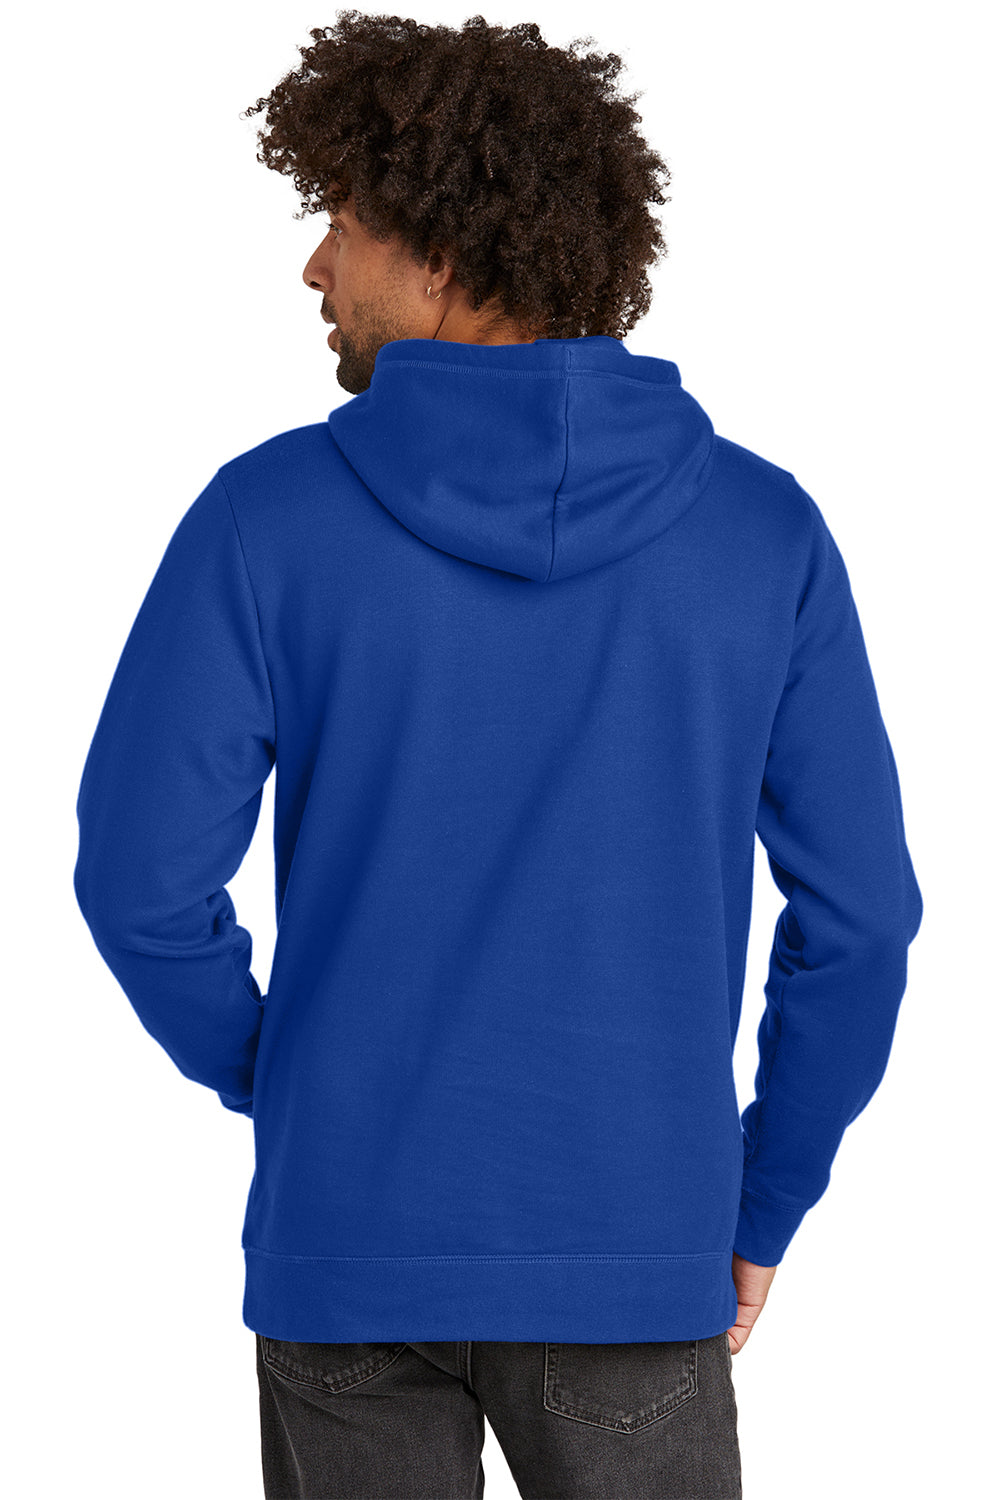 New Era NEA550 Mens Comeback Fleece Hooded Sweatshirt Hoodie Royal Blue Back